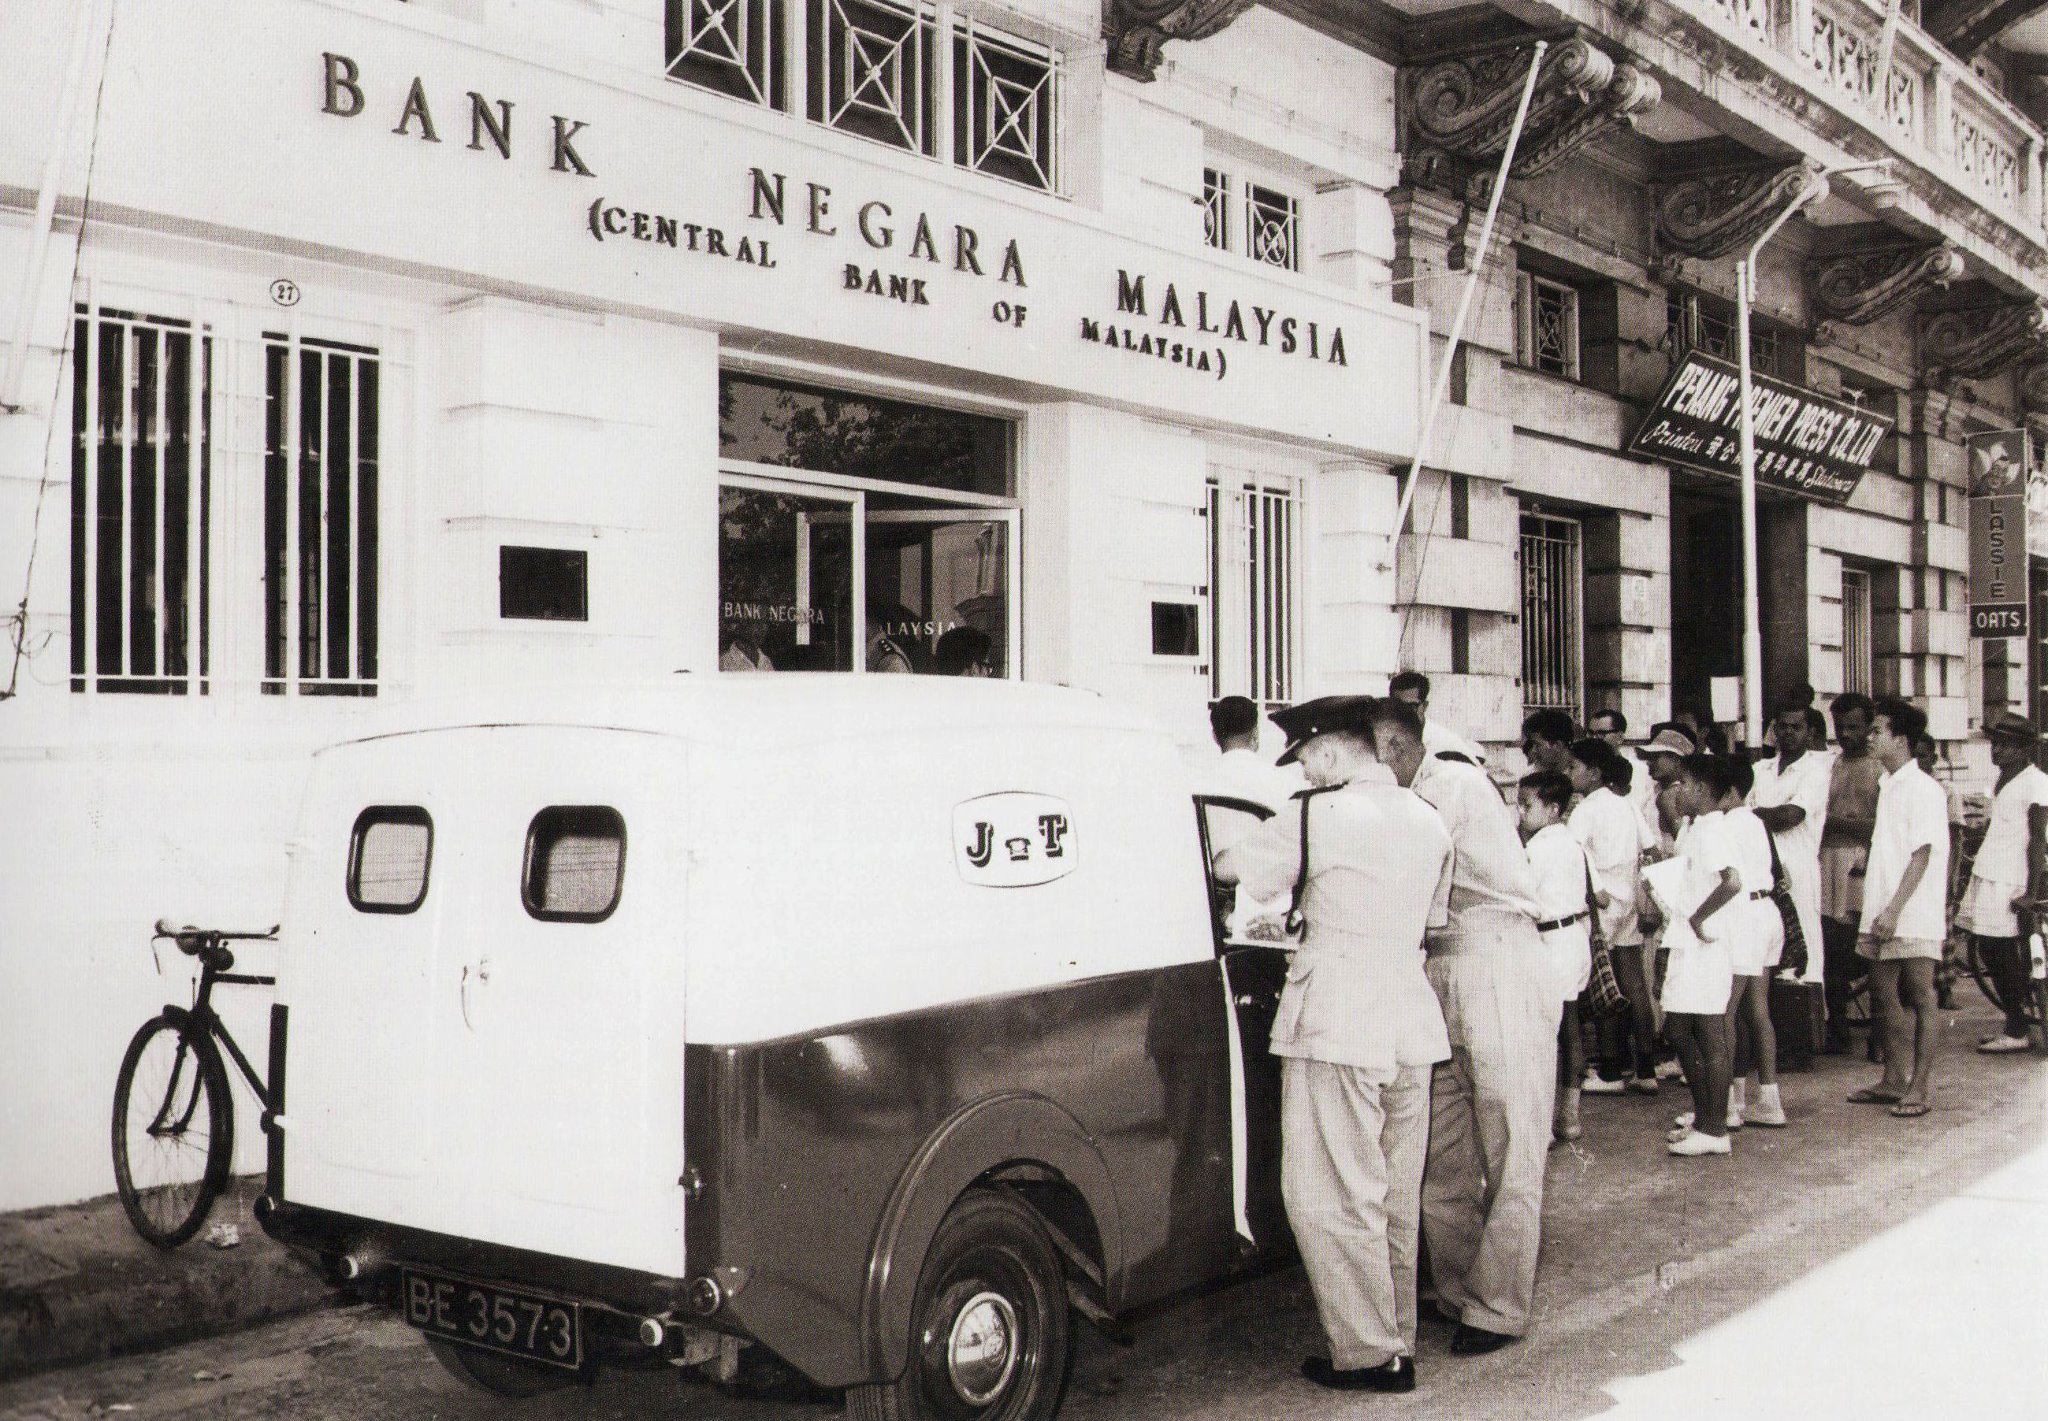 Bank negara malaysia 6 decaed ago, circa 1957.